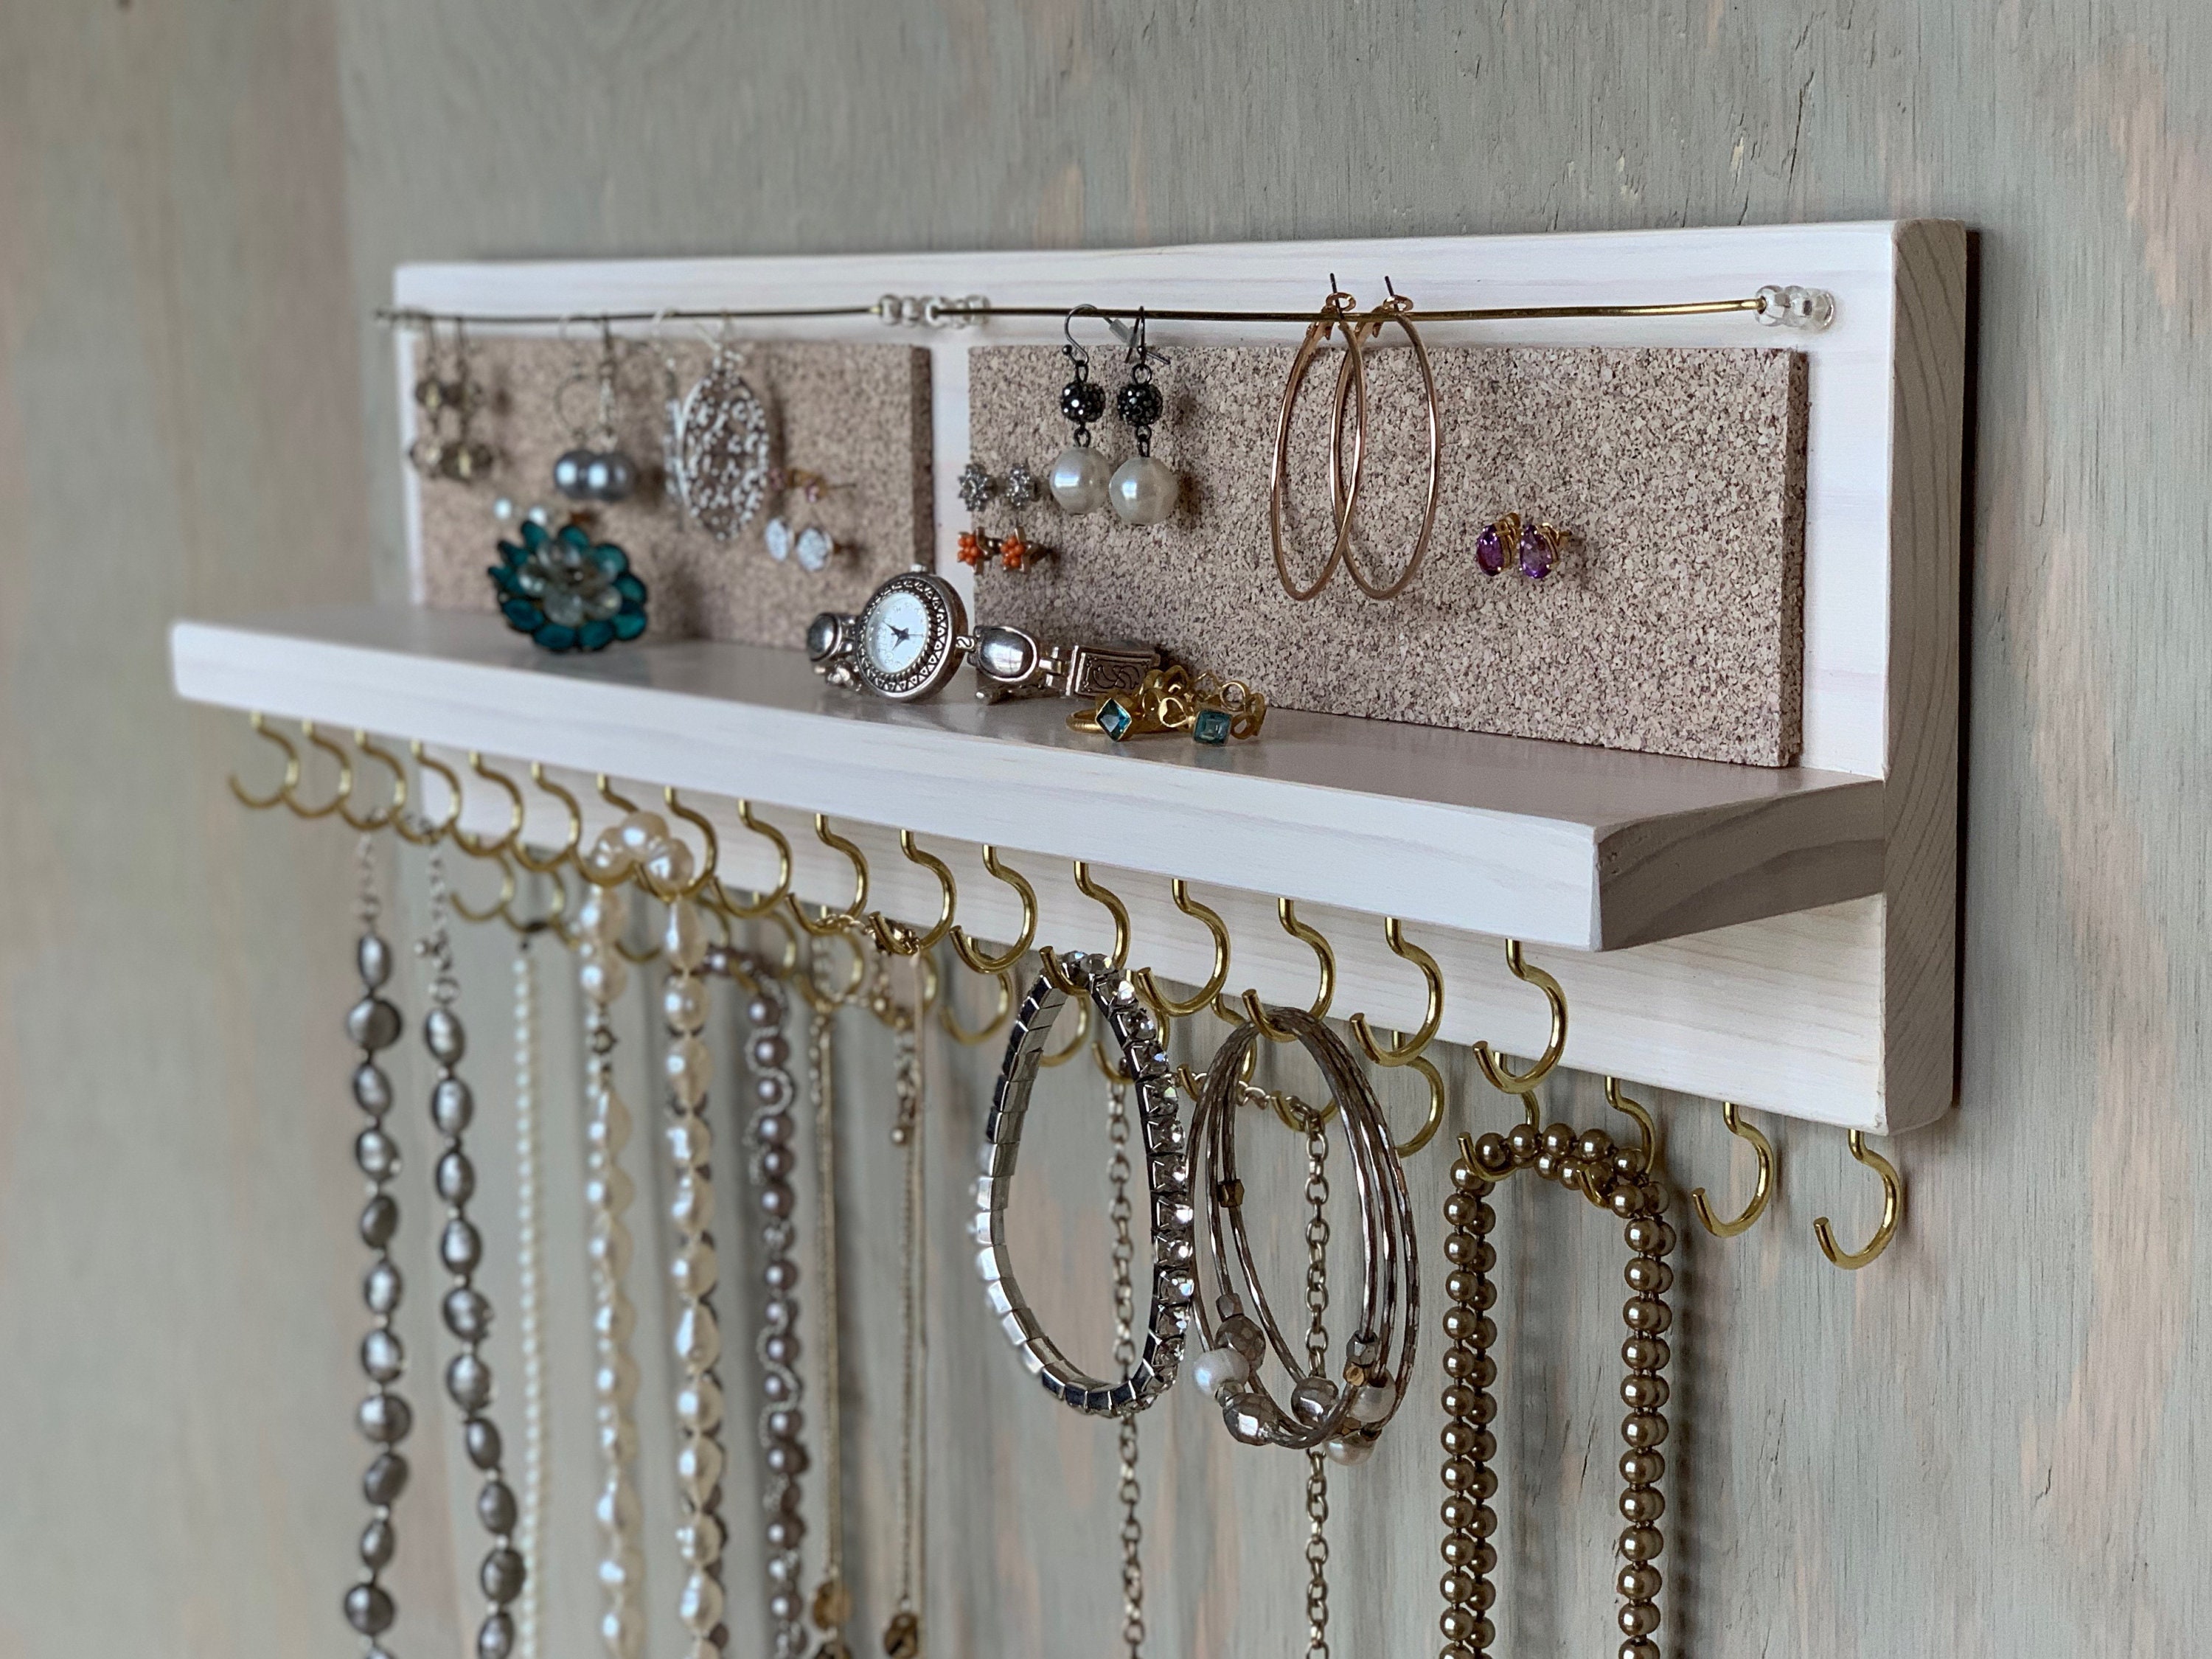  Organizador de joyas montado en la pared, soporte giratorio  para joyas, colgador para guardar y mostrar los collares, pulseras y  pendientes : Ropa, Zapatos y Joyería